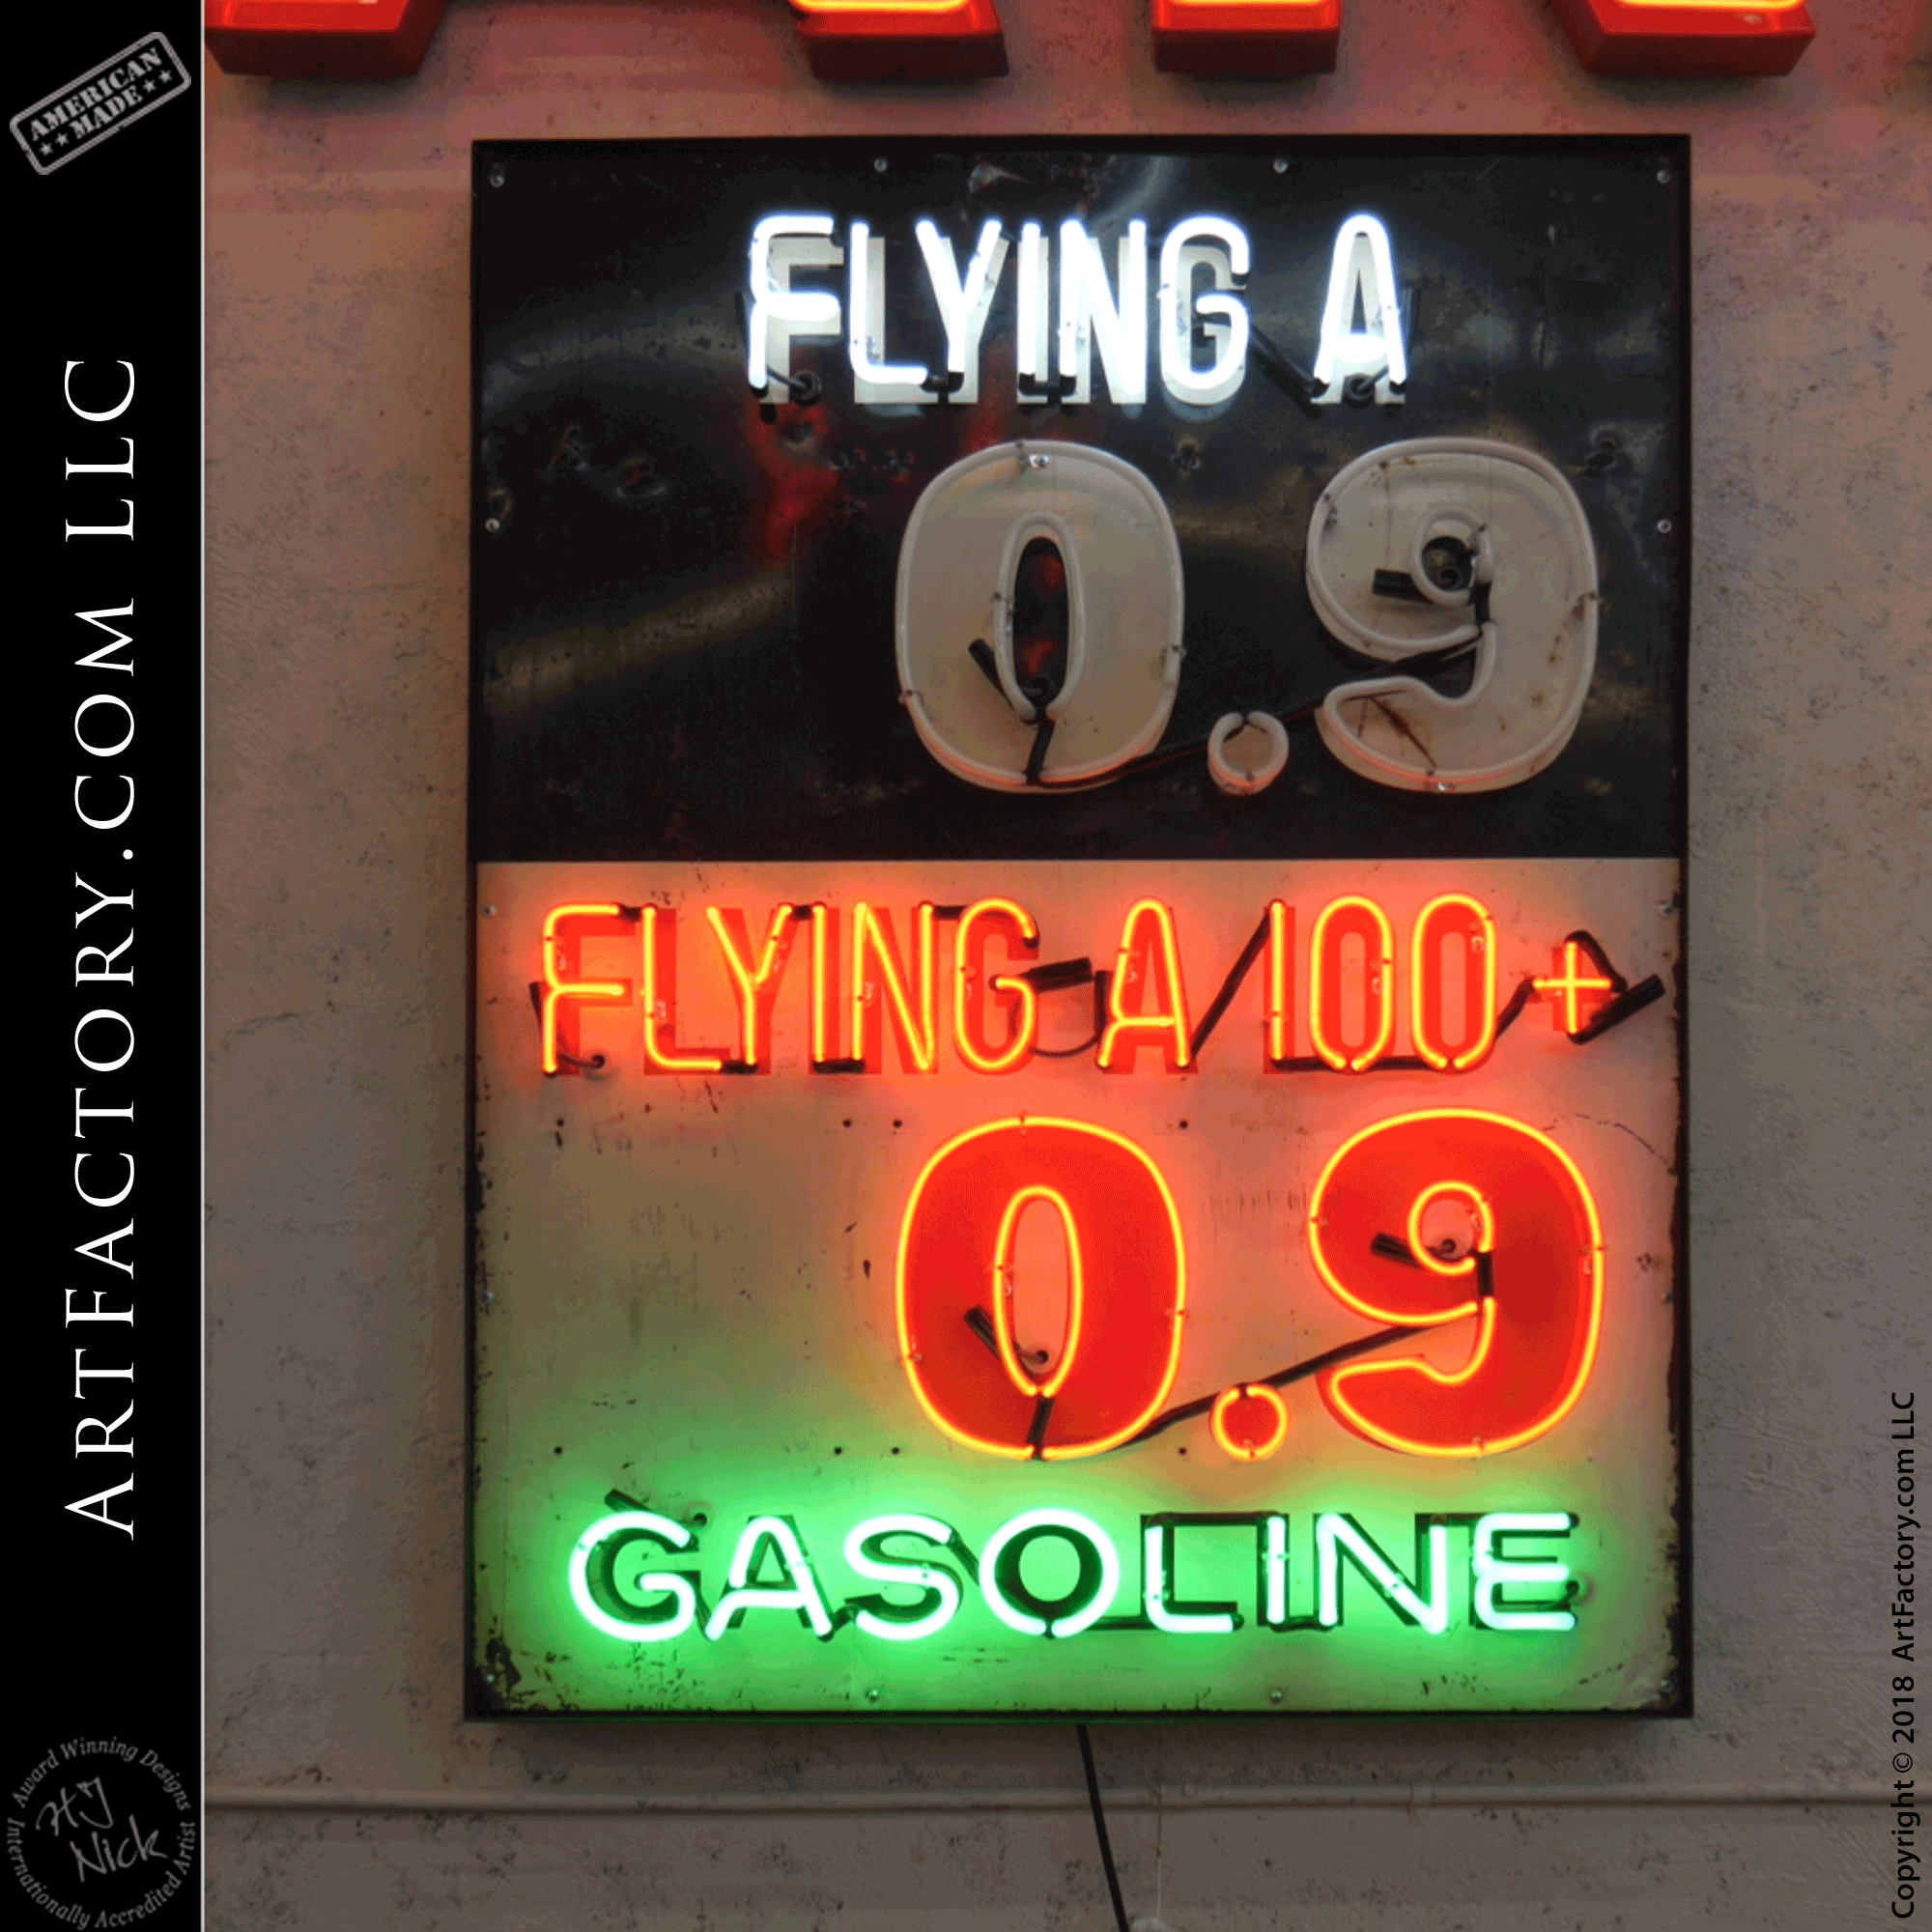 Vintage Neon Gas Road Auto Sign